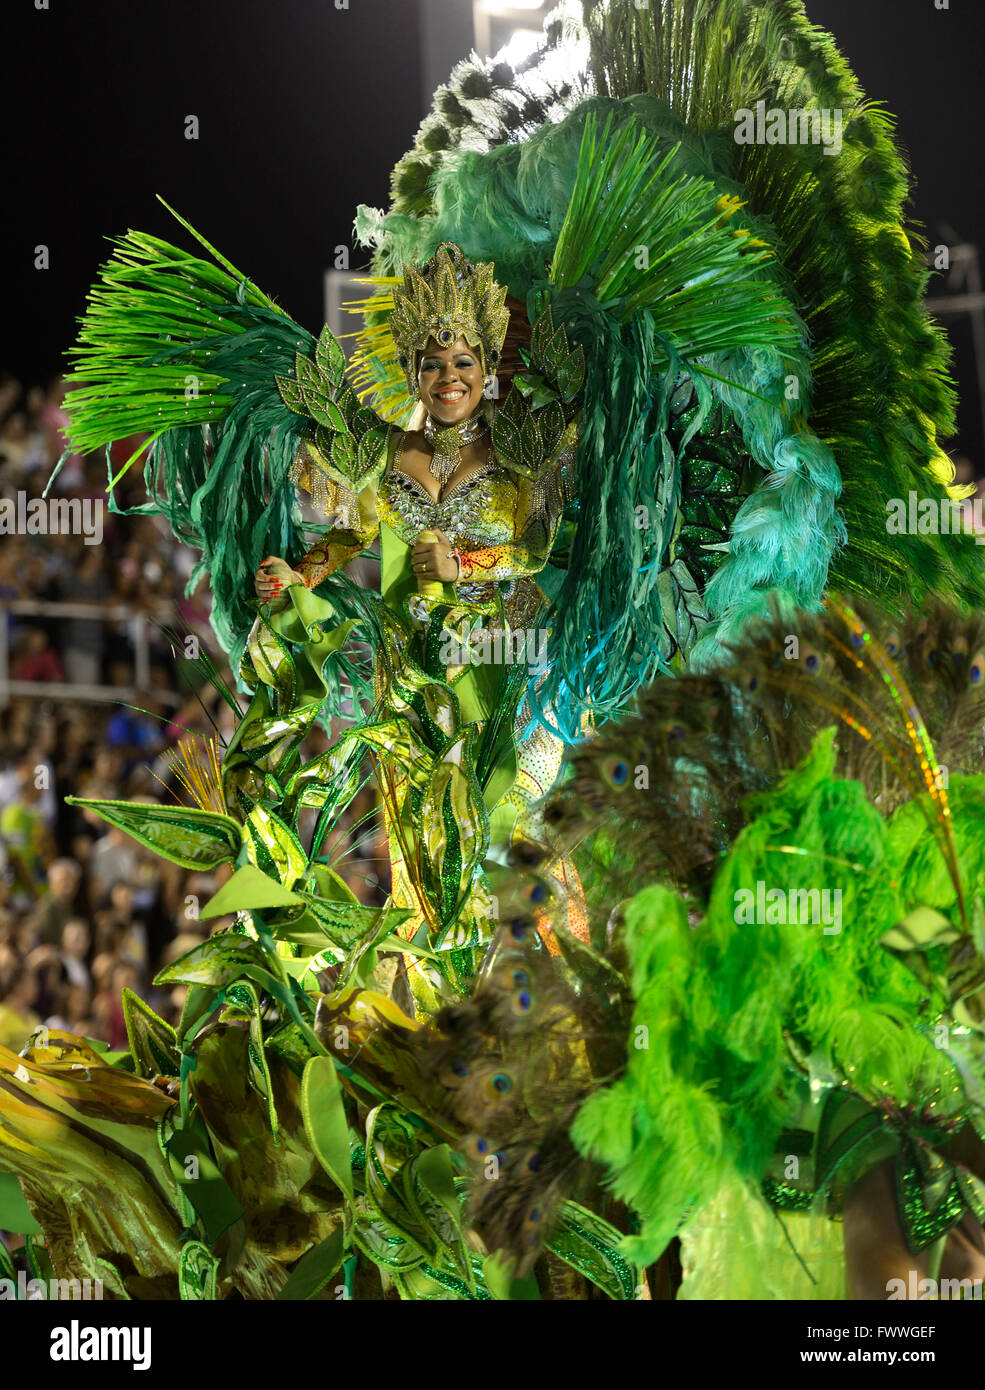 Samba Dancer on a allegorical float, parade of the samba school Imperatriz Leopoldinense, Carnival 2016 in the Sambodromo Stock Photo